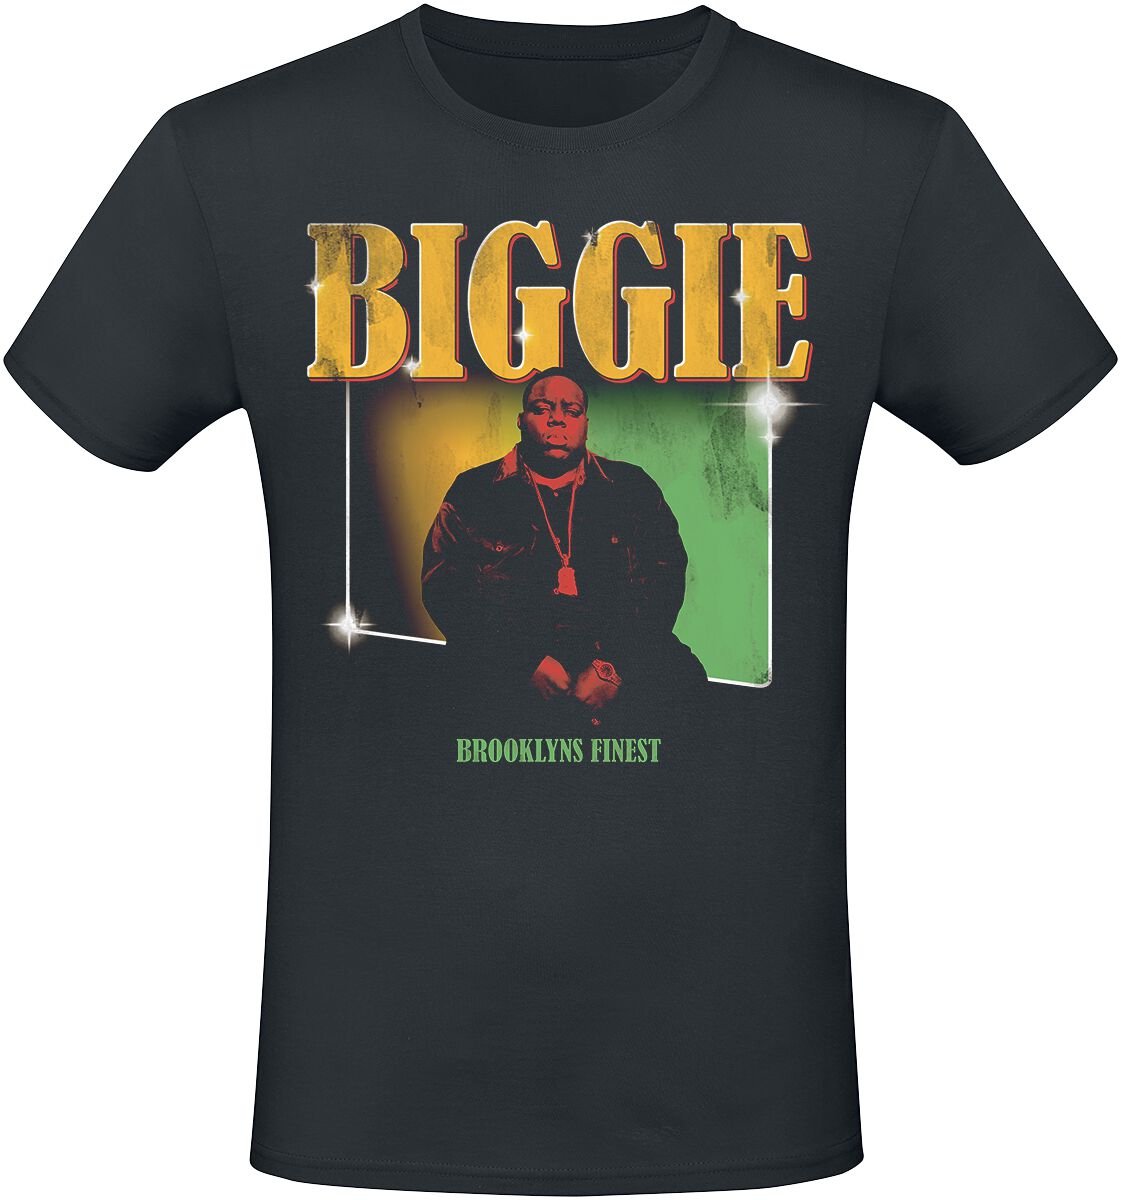 Notorious B.I.G. T-Shirt - Finest - S bis XXL - für Männer - Größe S - schwarz  - Lizenziertes Merchandise!